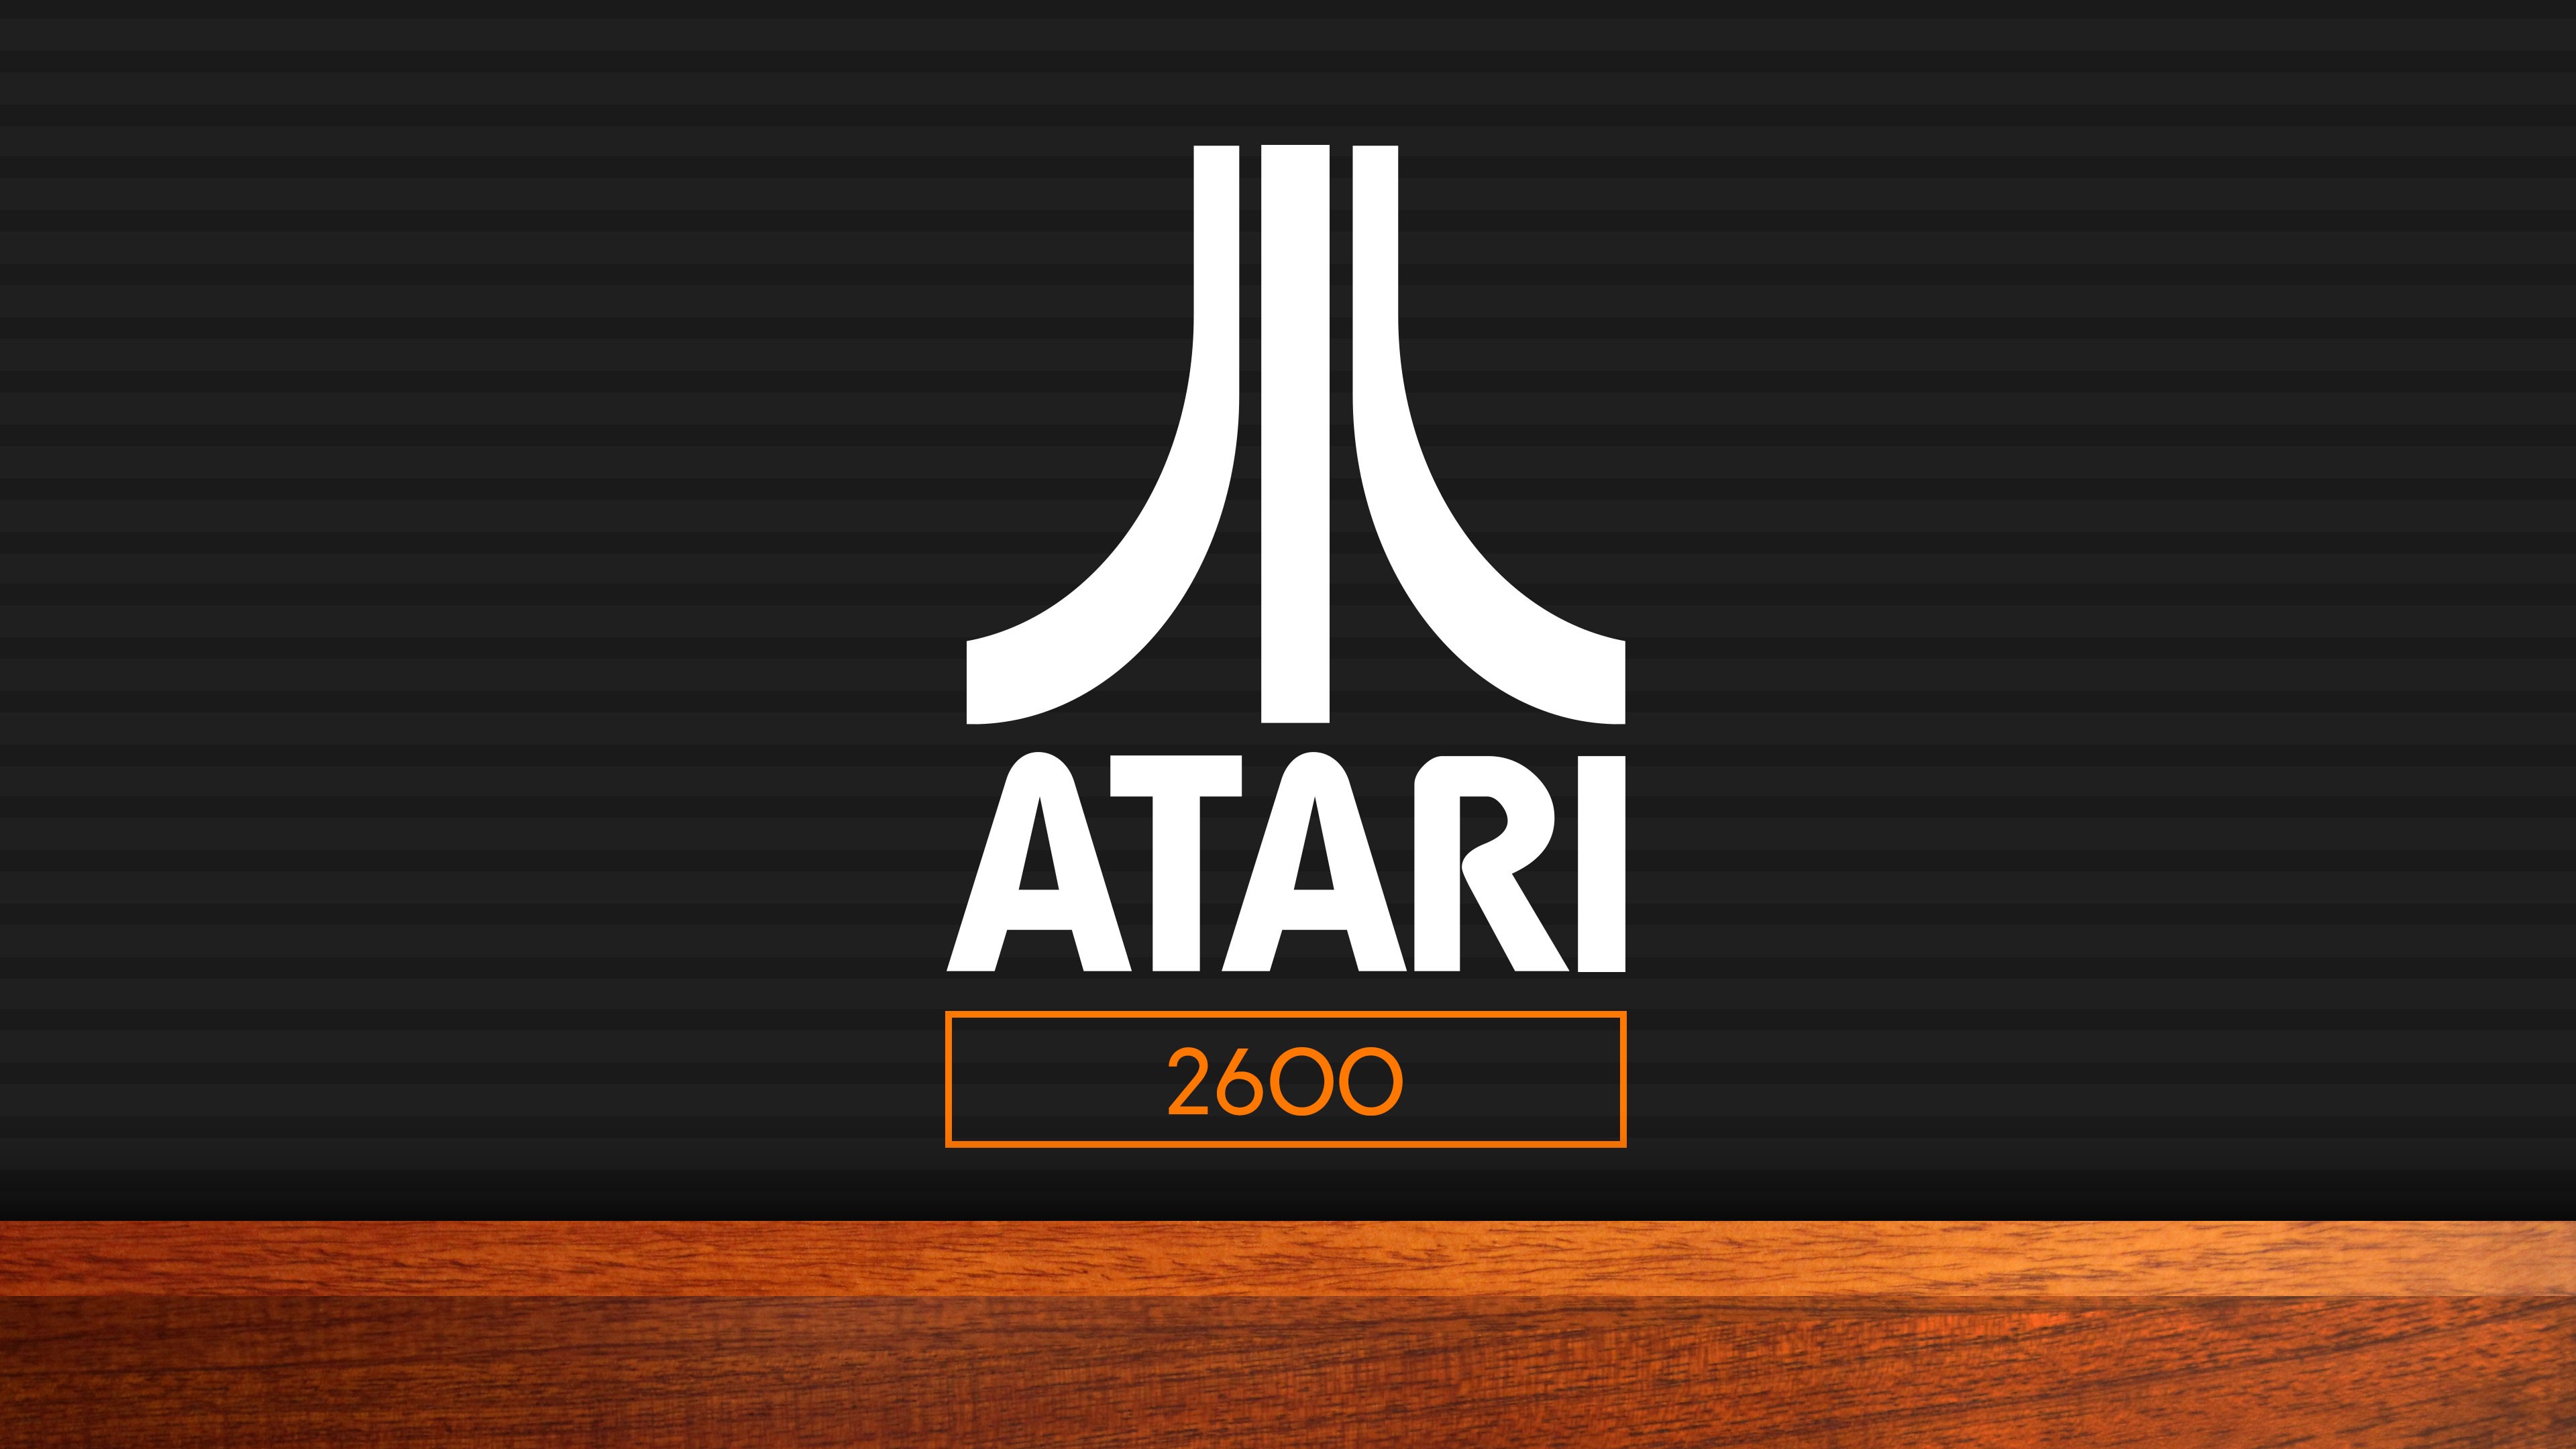 3840x2160 > Atari Wallpapers